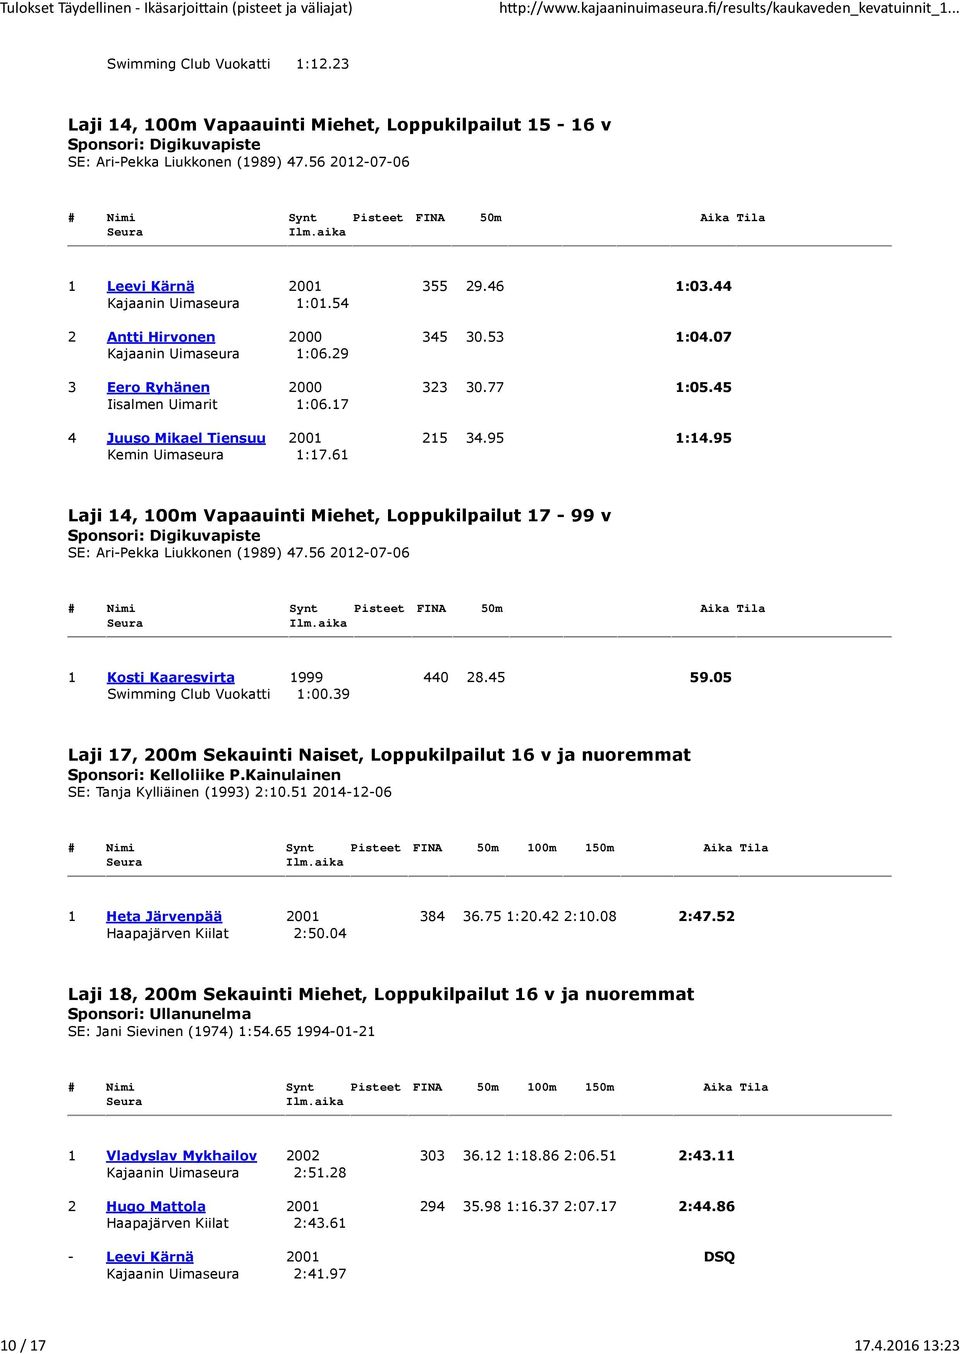 95 1:14.95 Kemin Uimaseura 1:17.61 Laji 14, 100m Vapaauinti Miehet, Loppukilpailut 17-99 v Sponsori: Digikuvapiste SE: Ari-Pekka Liukkonen (1989) 47.56 2012-07-06 1 Kosti Kaaresvirta 1999 440 28.